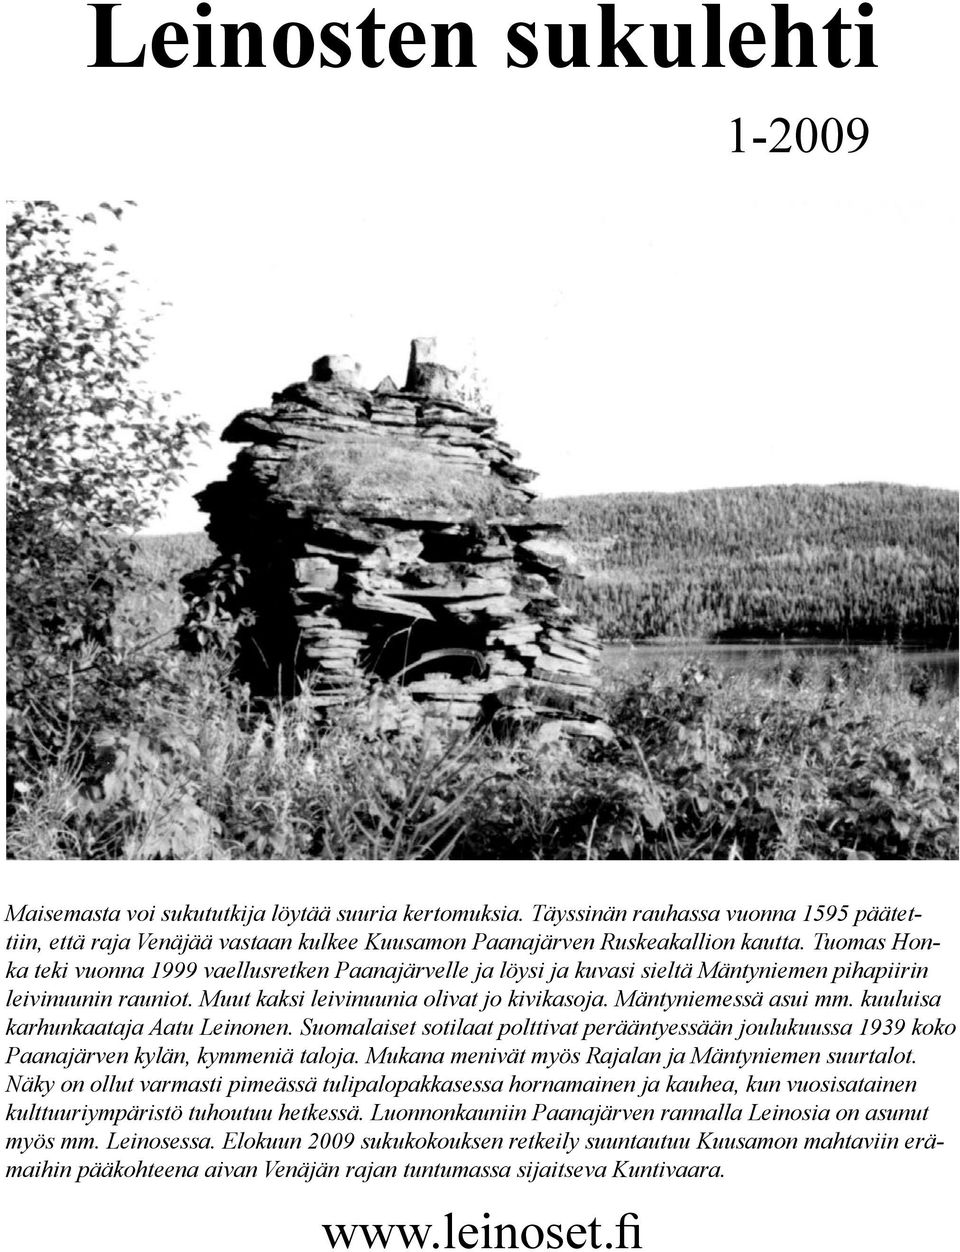 kuuluisa karhunkaataja Aatu Leinonen. Suomalaiset sotilaat polttivat perääntyessään joulukuussa 1939 koko Paanajärven kylän, kymmeniä taloja. Mukana menivät myös Rajalan ja Mäntyniemen suurtalot.